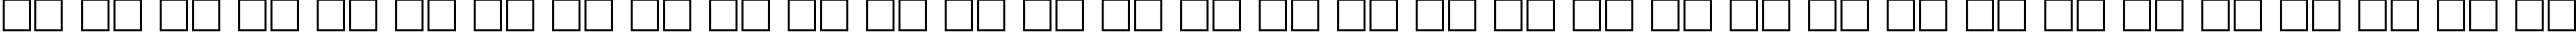 Пример написания русского алфавита шрифтом MyslNarrowCTT Bold